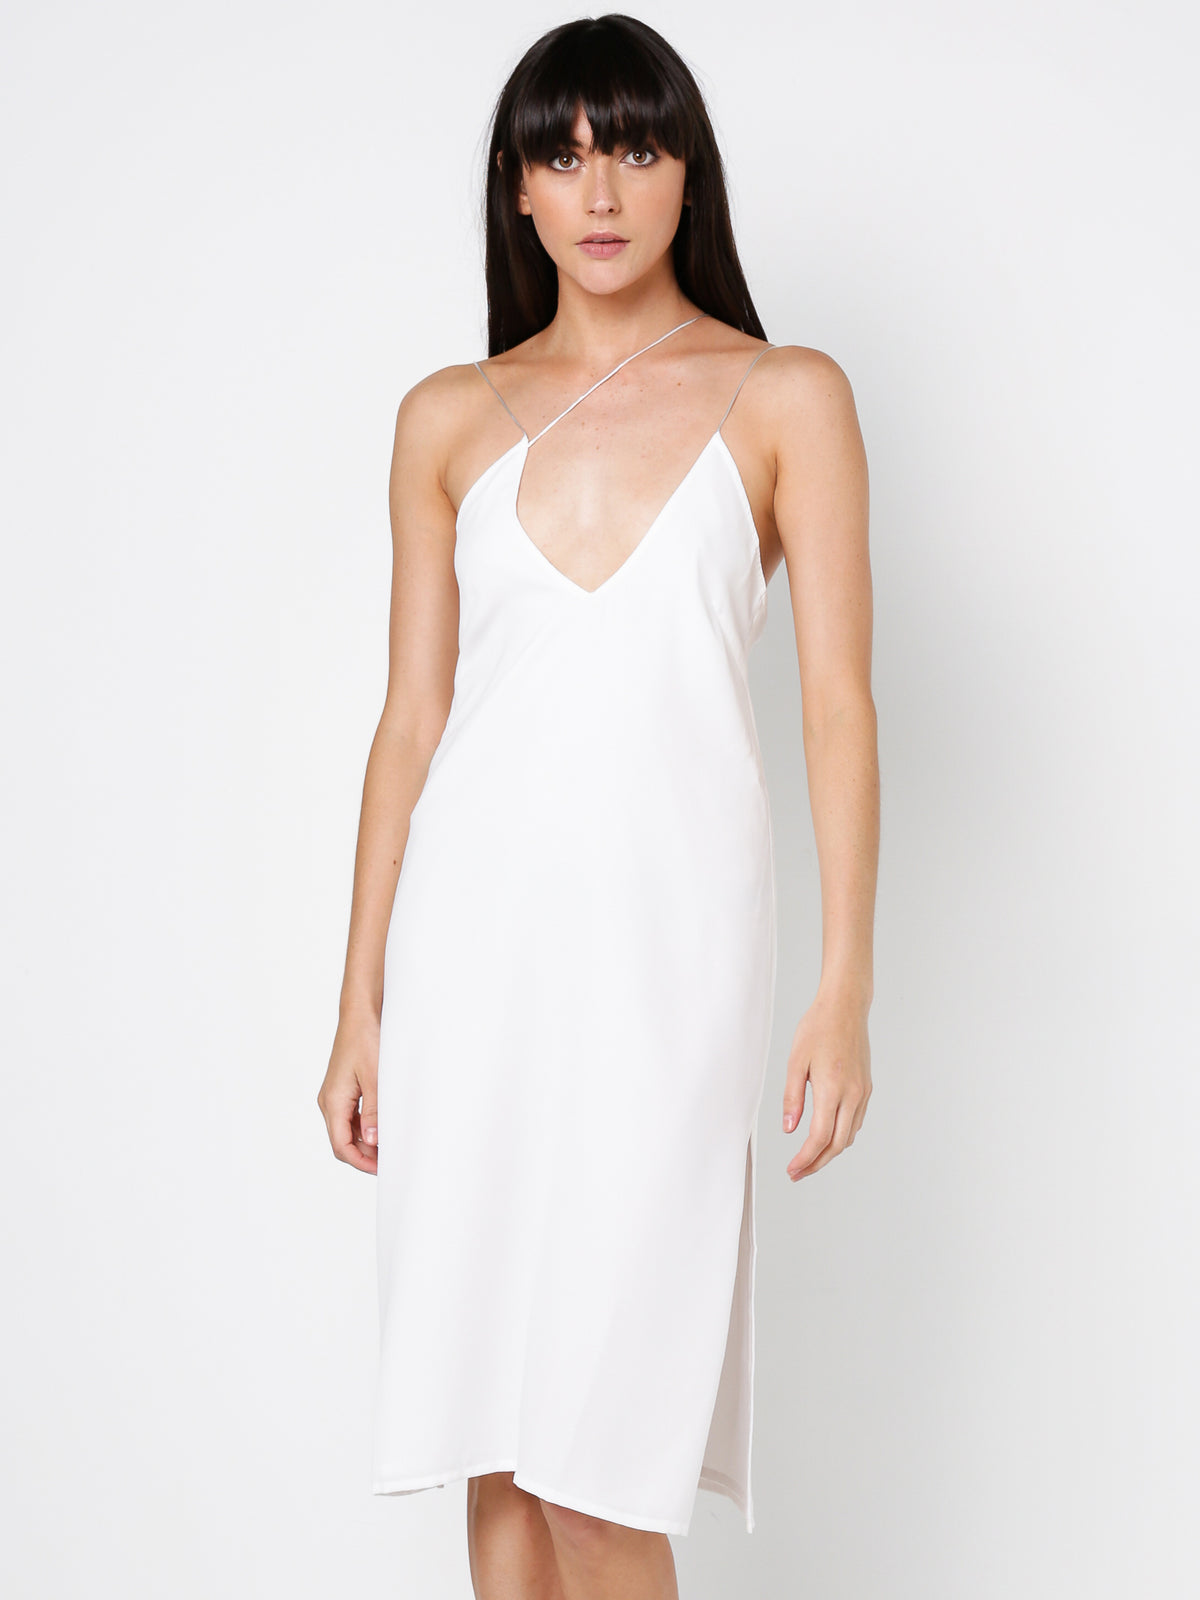 Seventh Floor Dress in White